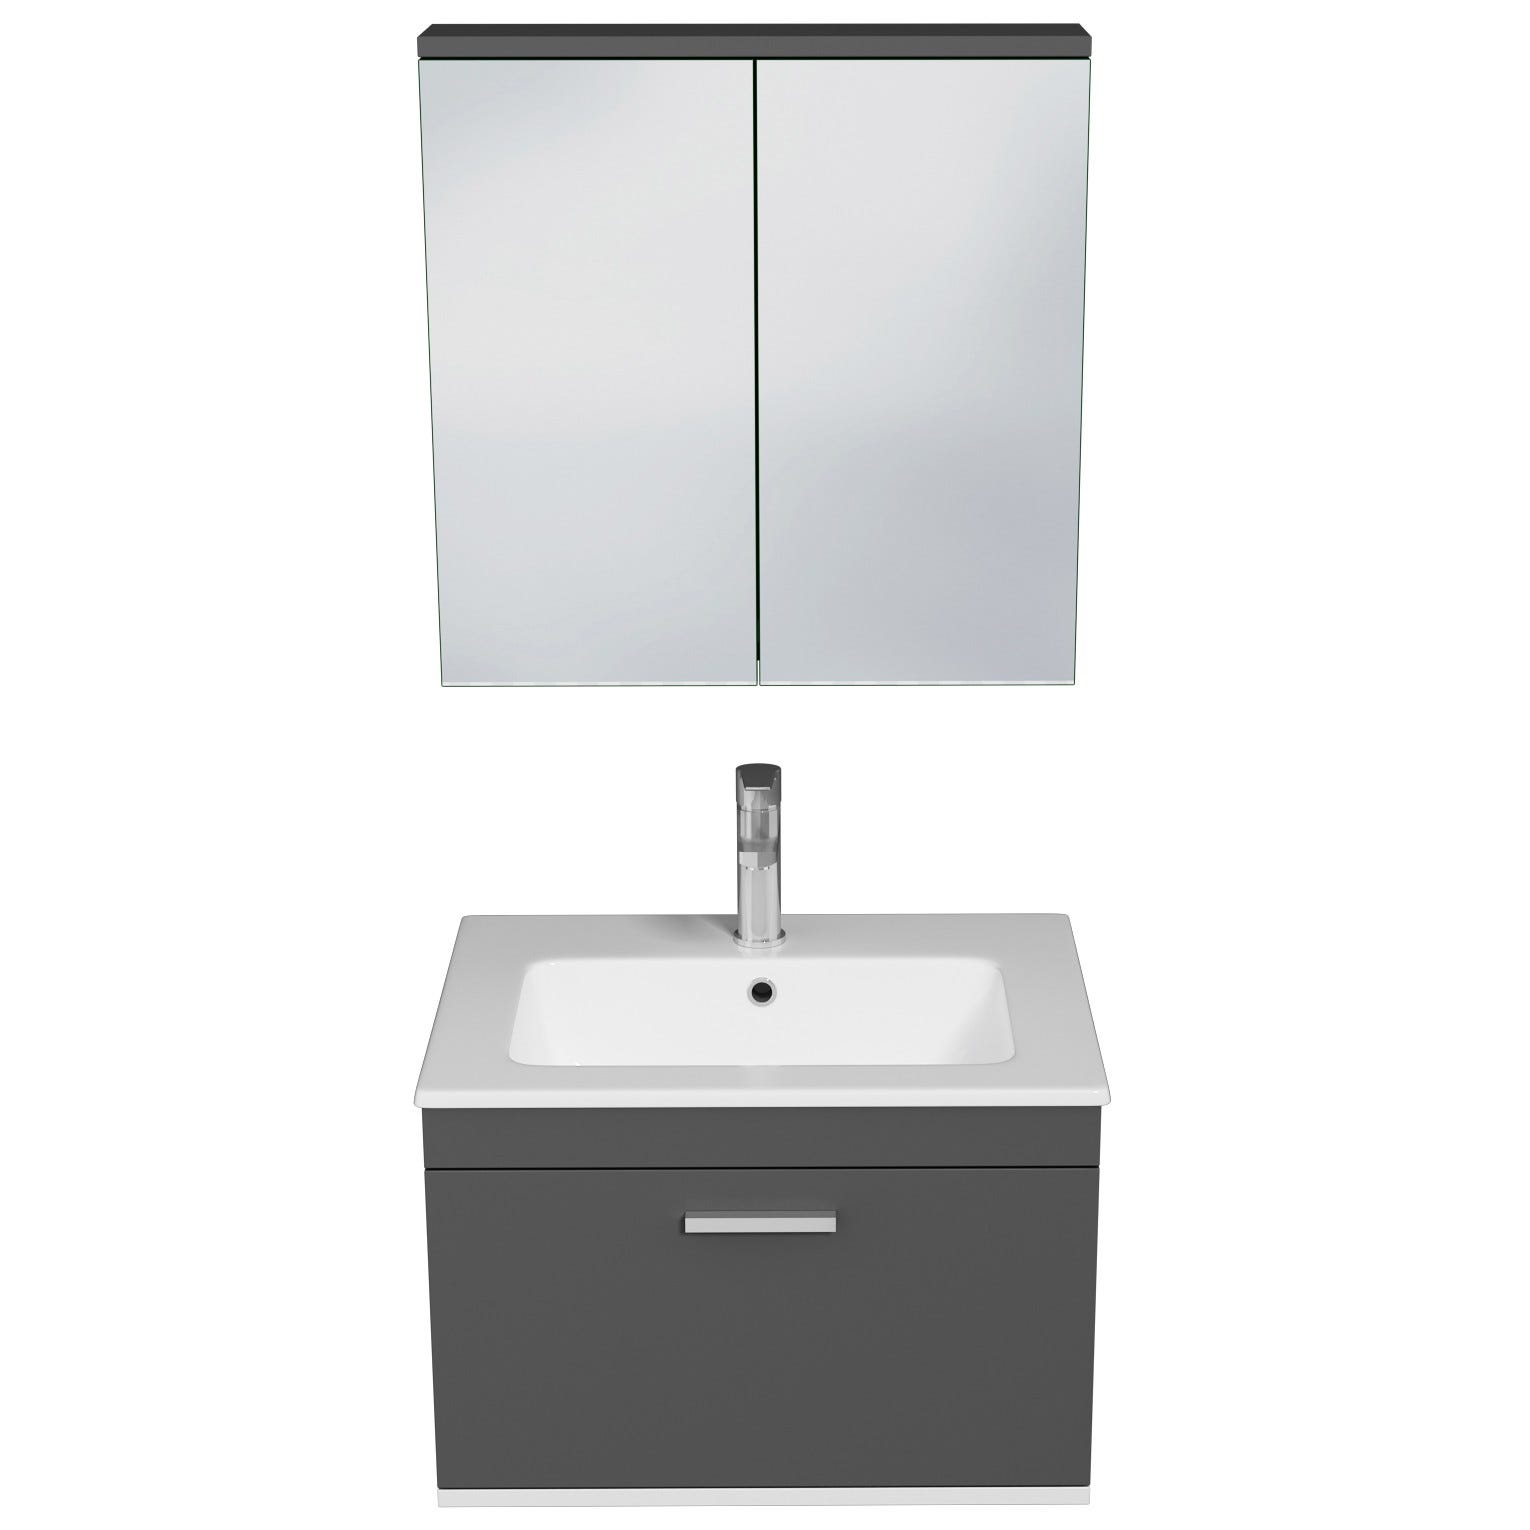 RUBITE Meuble salle de bain simple vasque 1 tiroir gris anthracite largeur 60 cm + miroir armoire 3